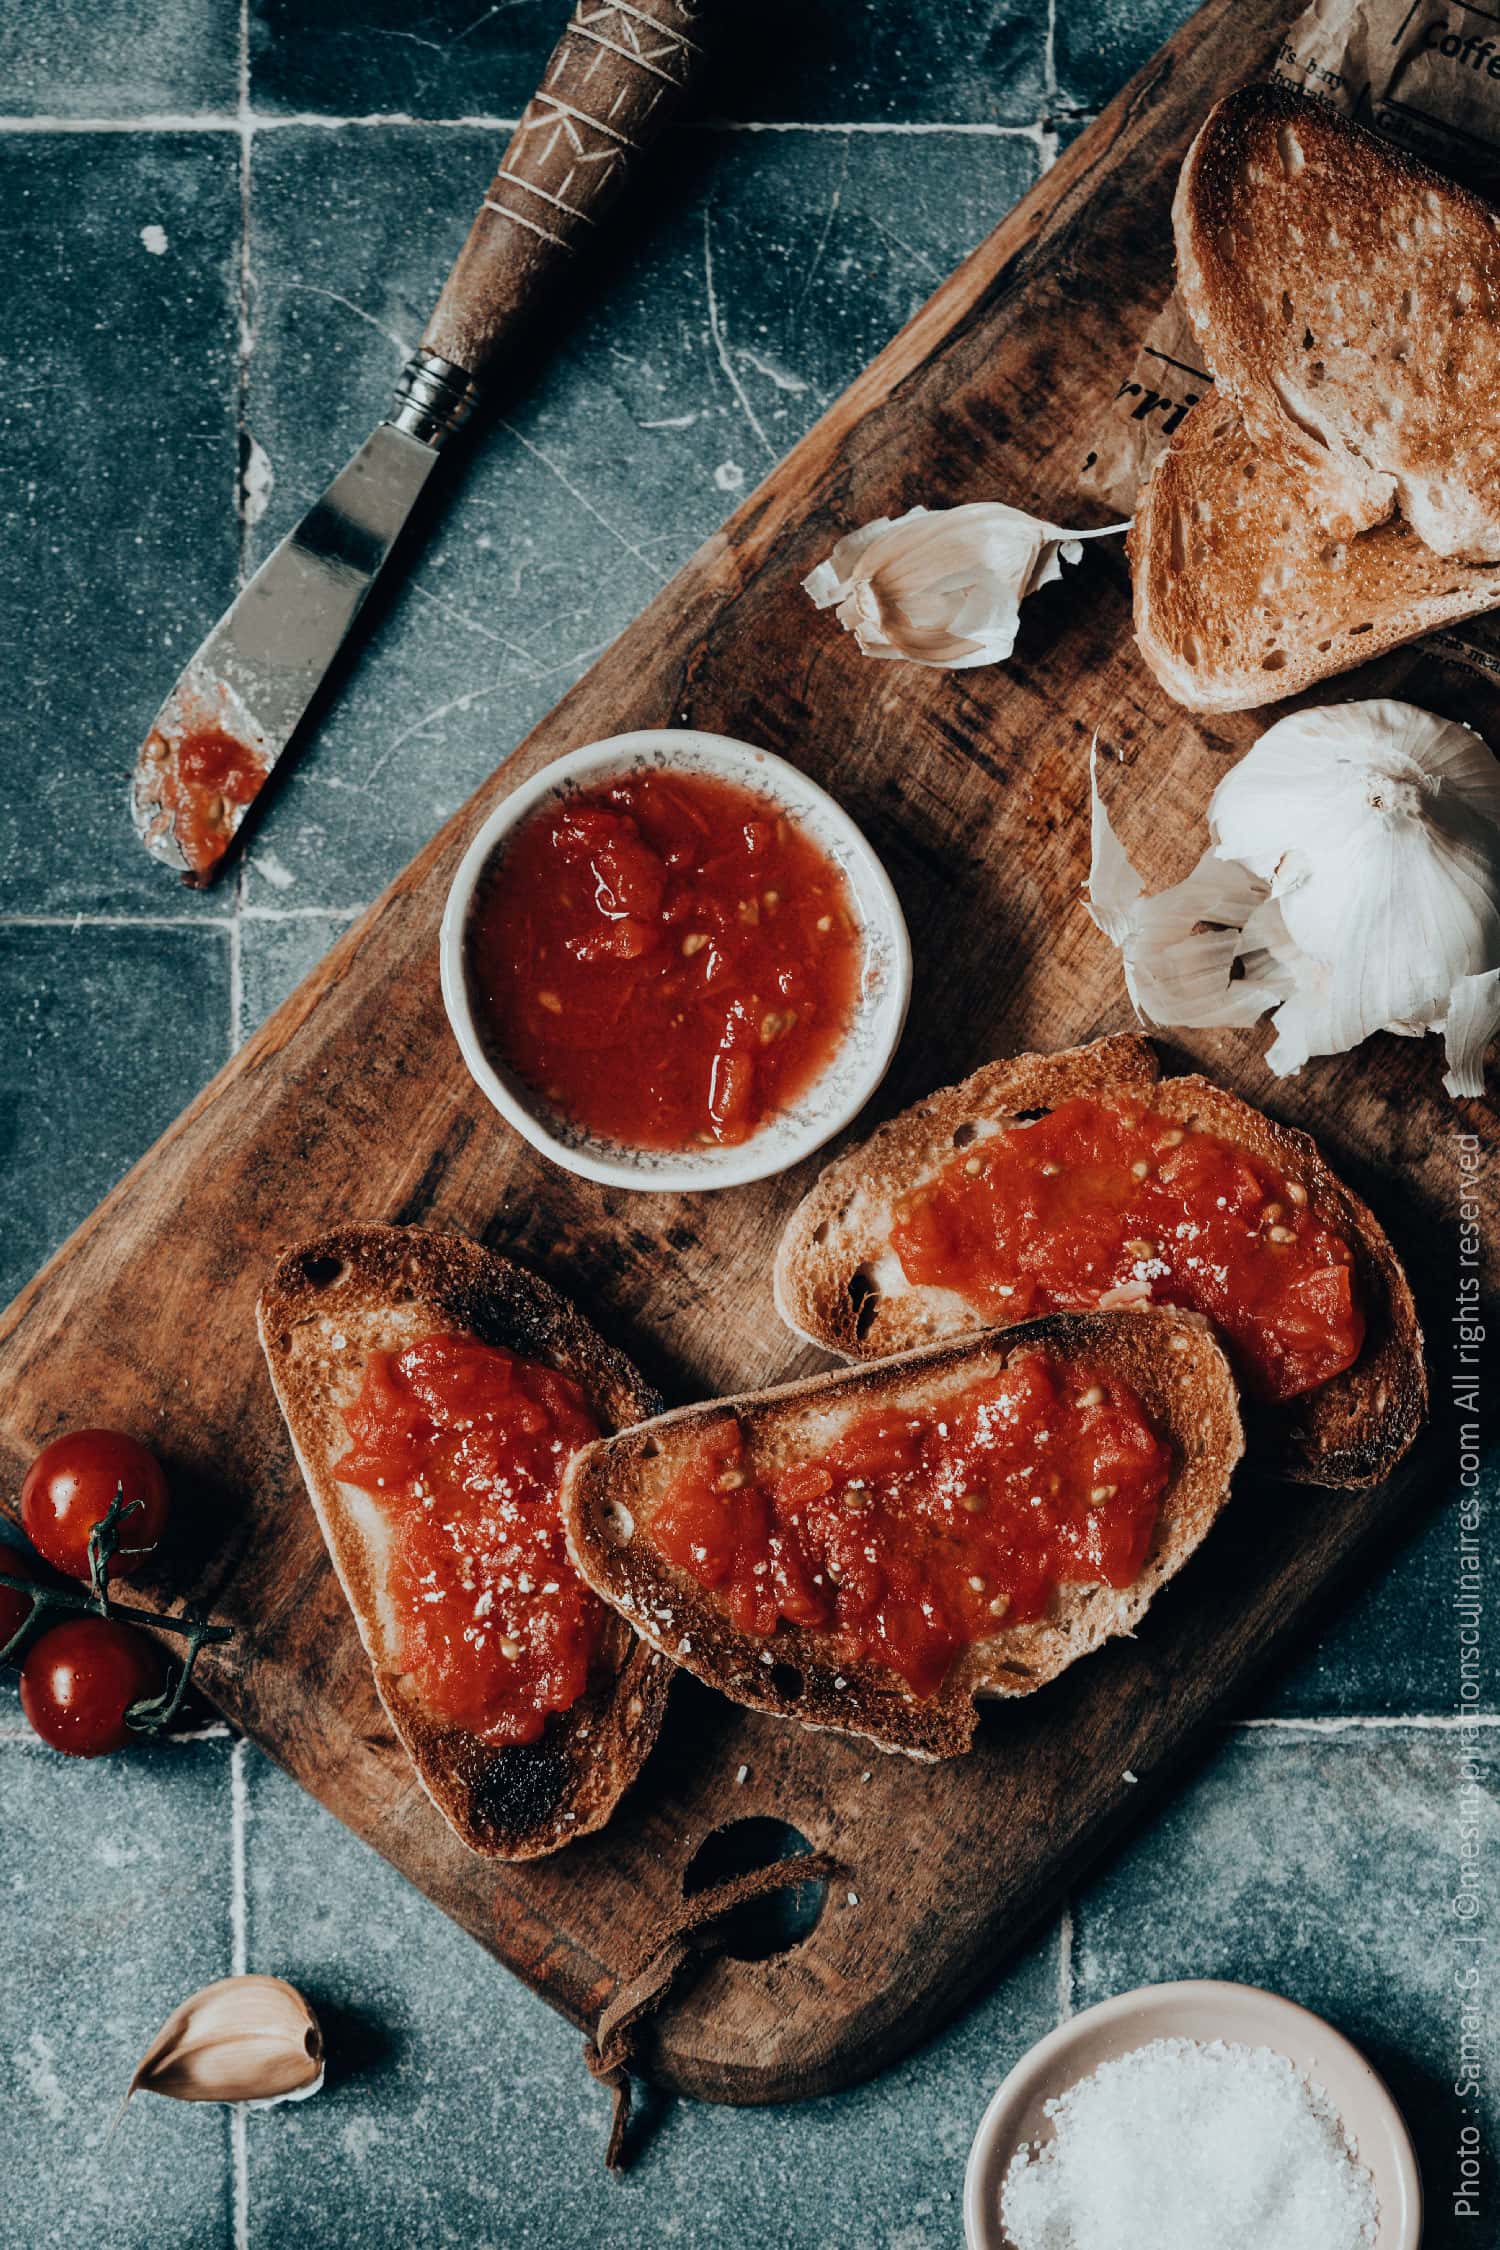 Pan con aux tomates, recette Catalane (idée Tapas)